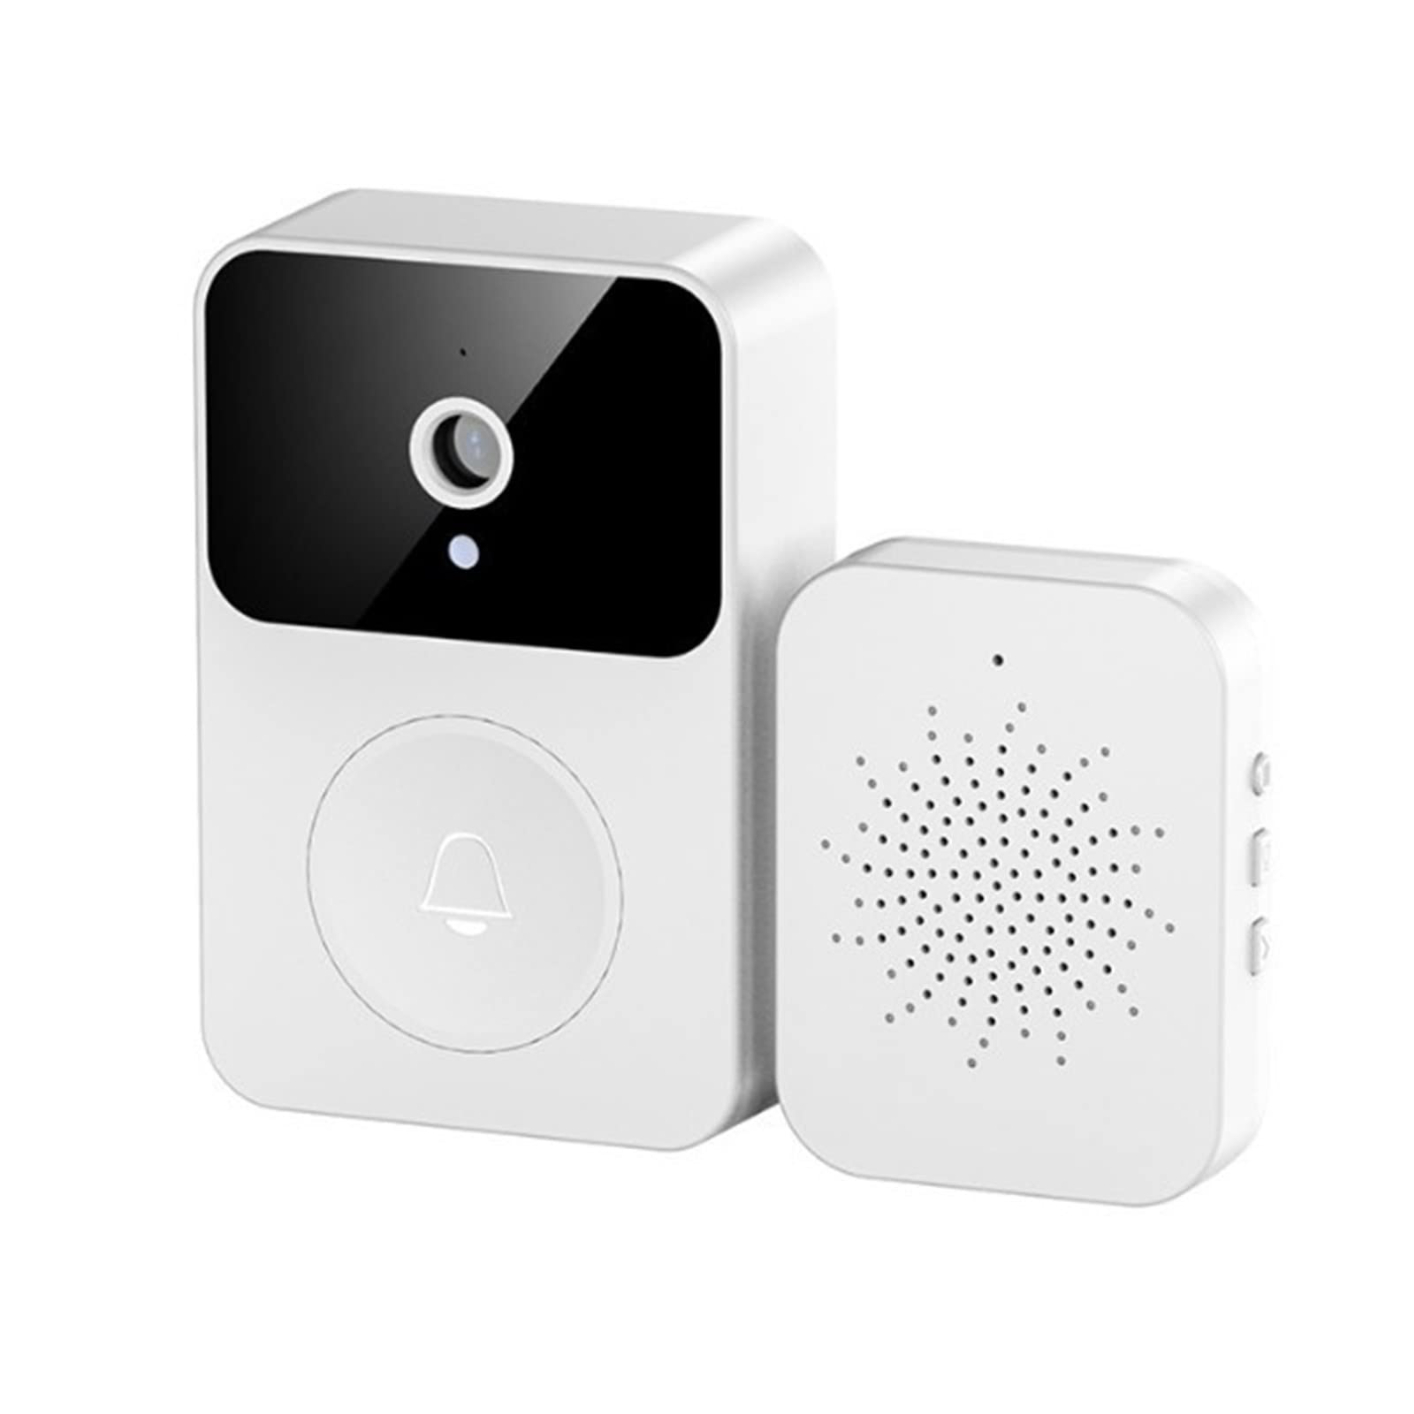 MECOLA Smart Wireless Doorbell with Camera Remote Video Doorbell WiFi Rechargeable Intelligent Visual Doorbell Home Intercom Hd Night Vision Security Door Doorbell